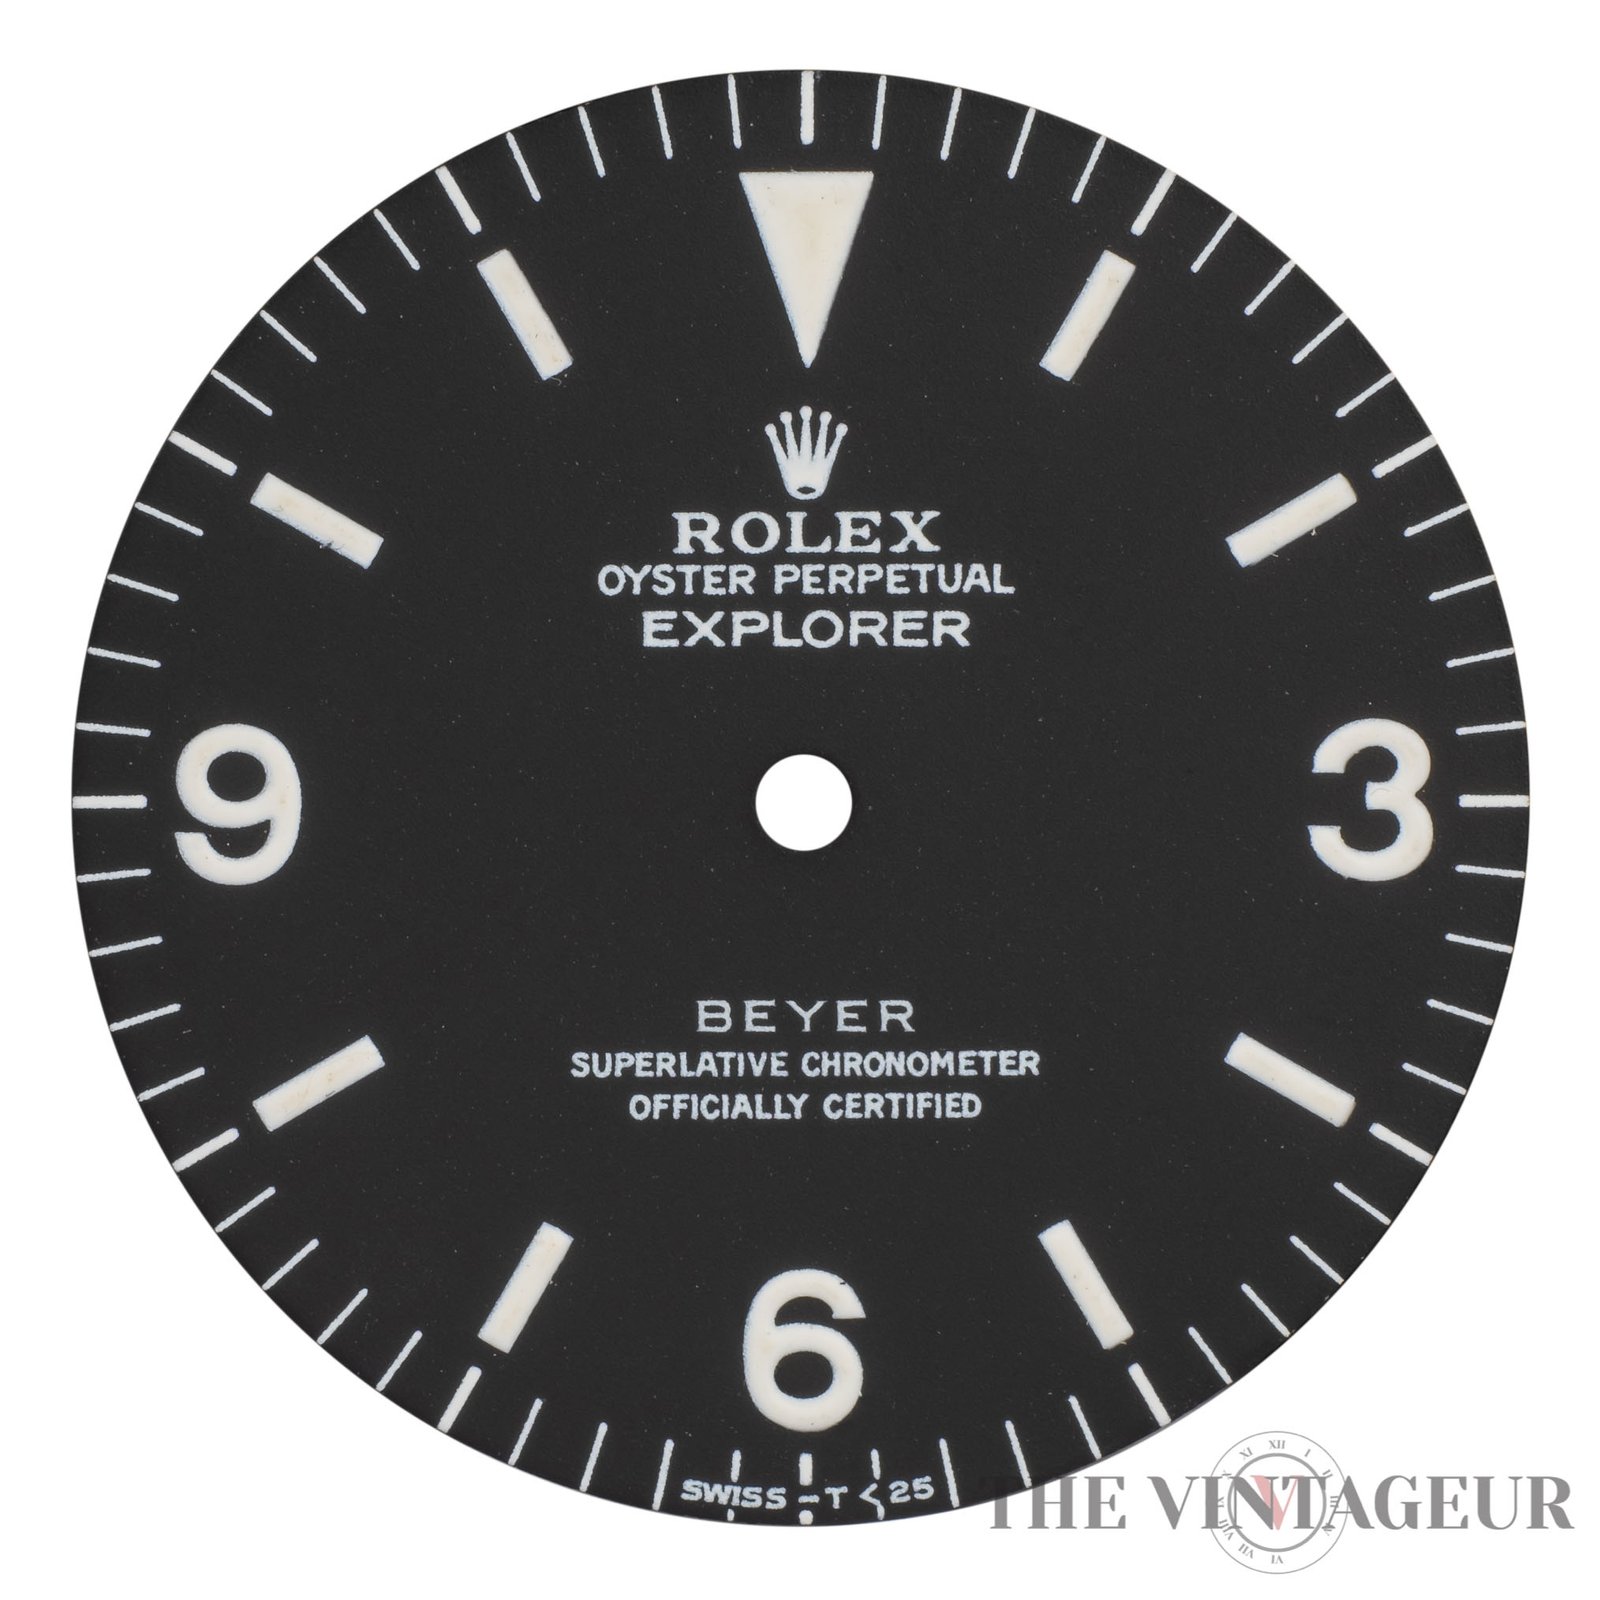 Rolex explorer beyer